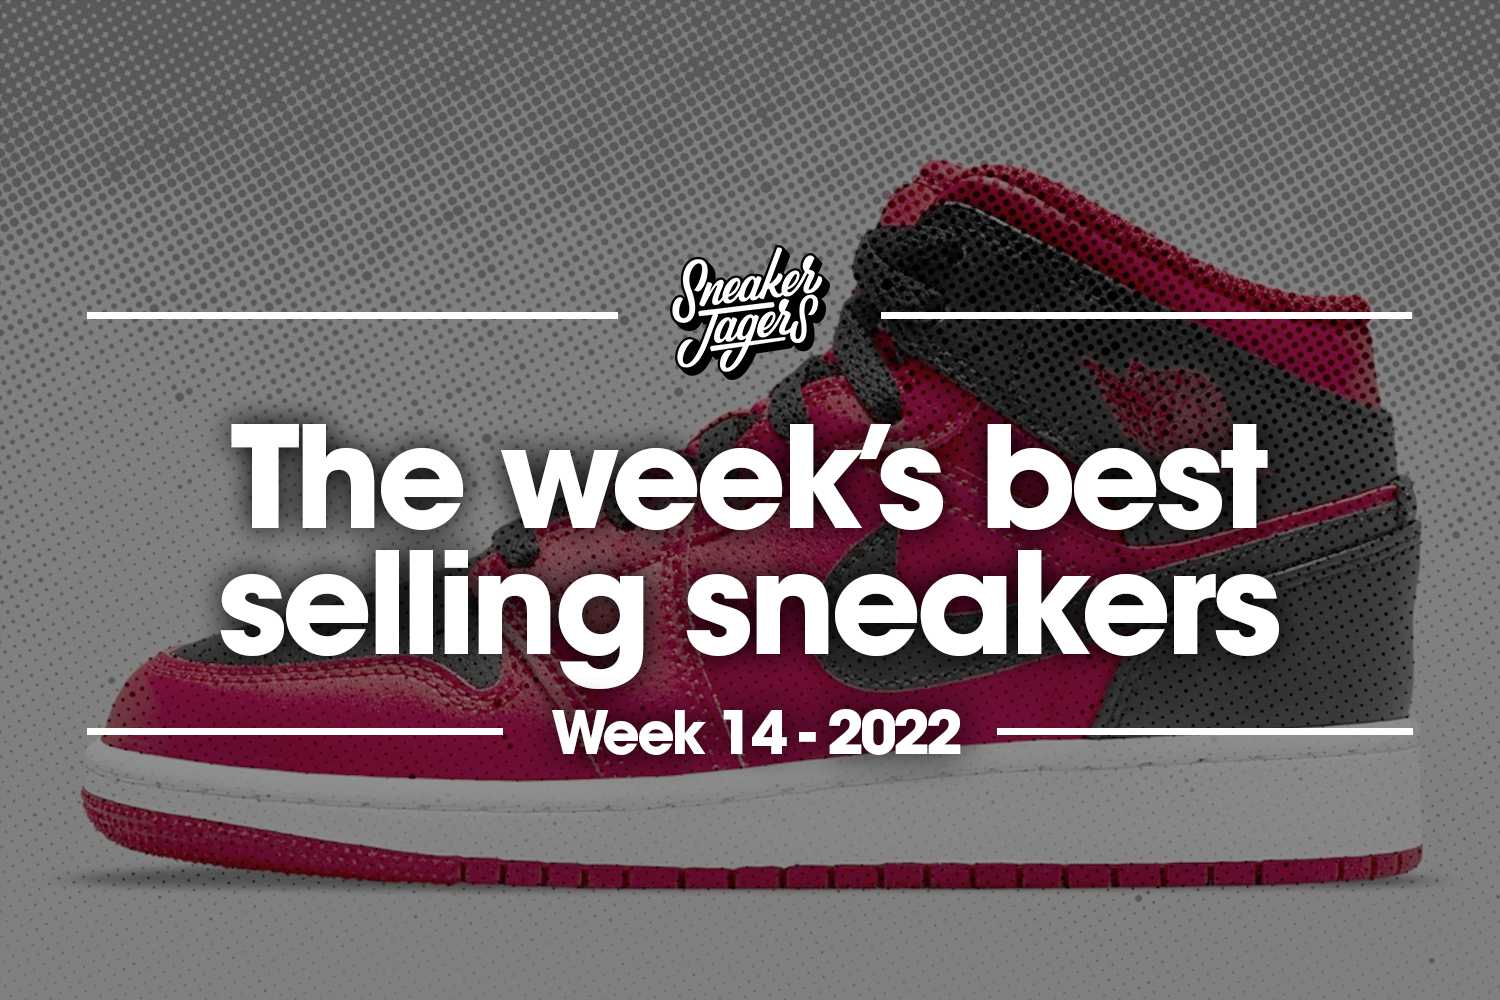 The 5 best-selling sneakers of week 14